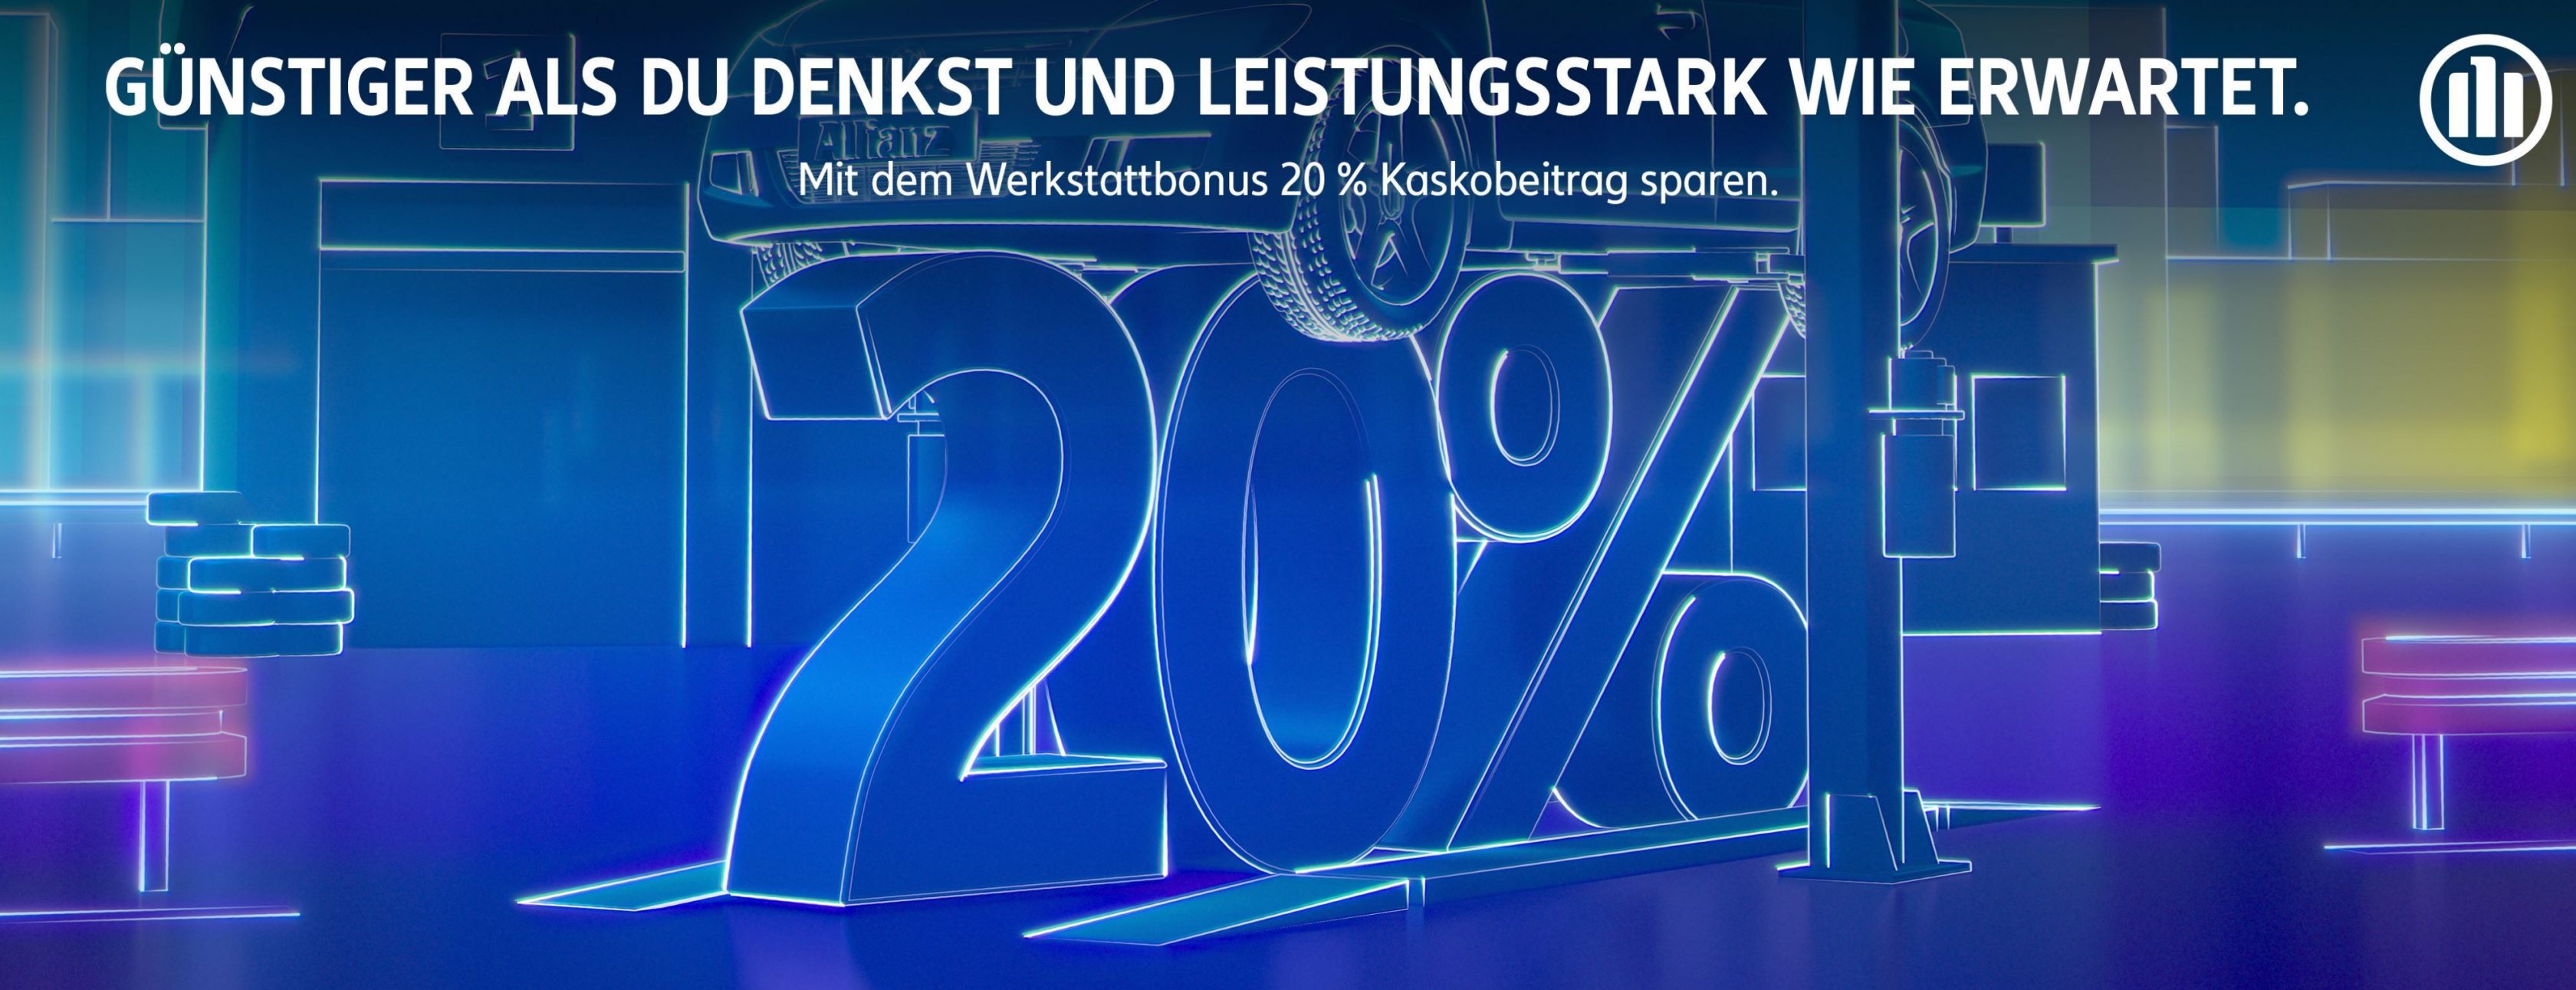 Allianz Versicherung Burkhard Below Duisburg - KFZ günstig  gut Beratung schnell billig